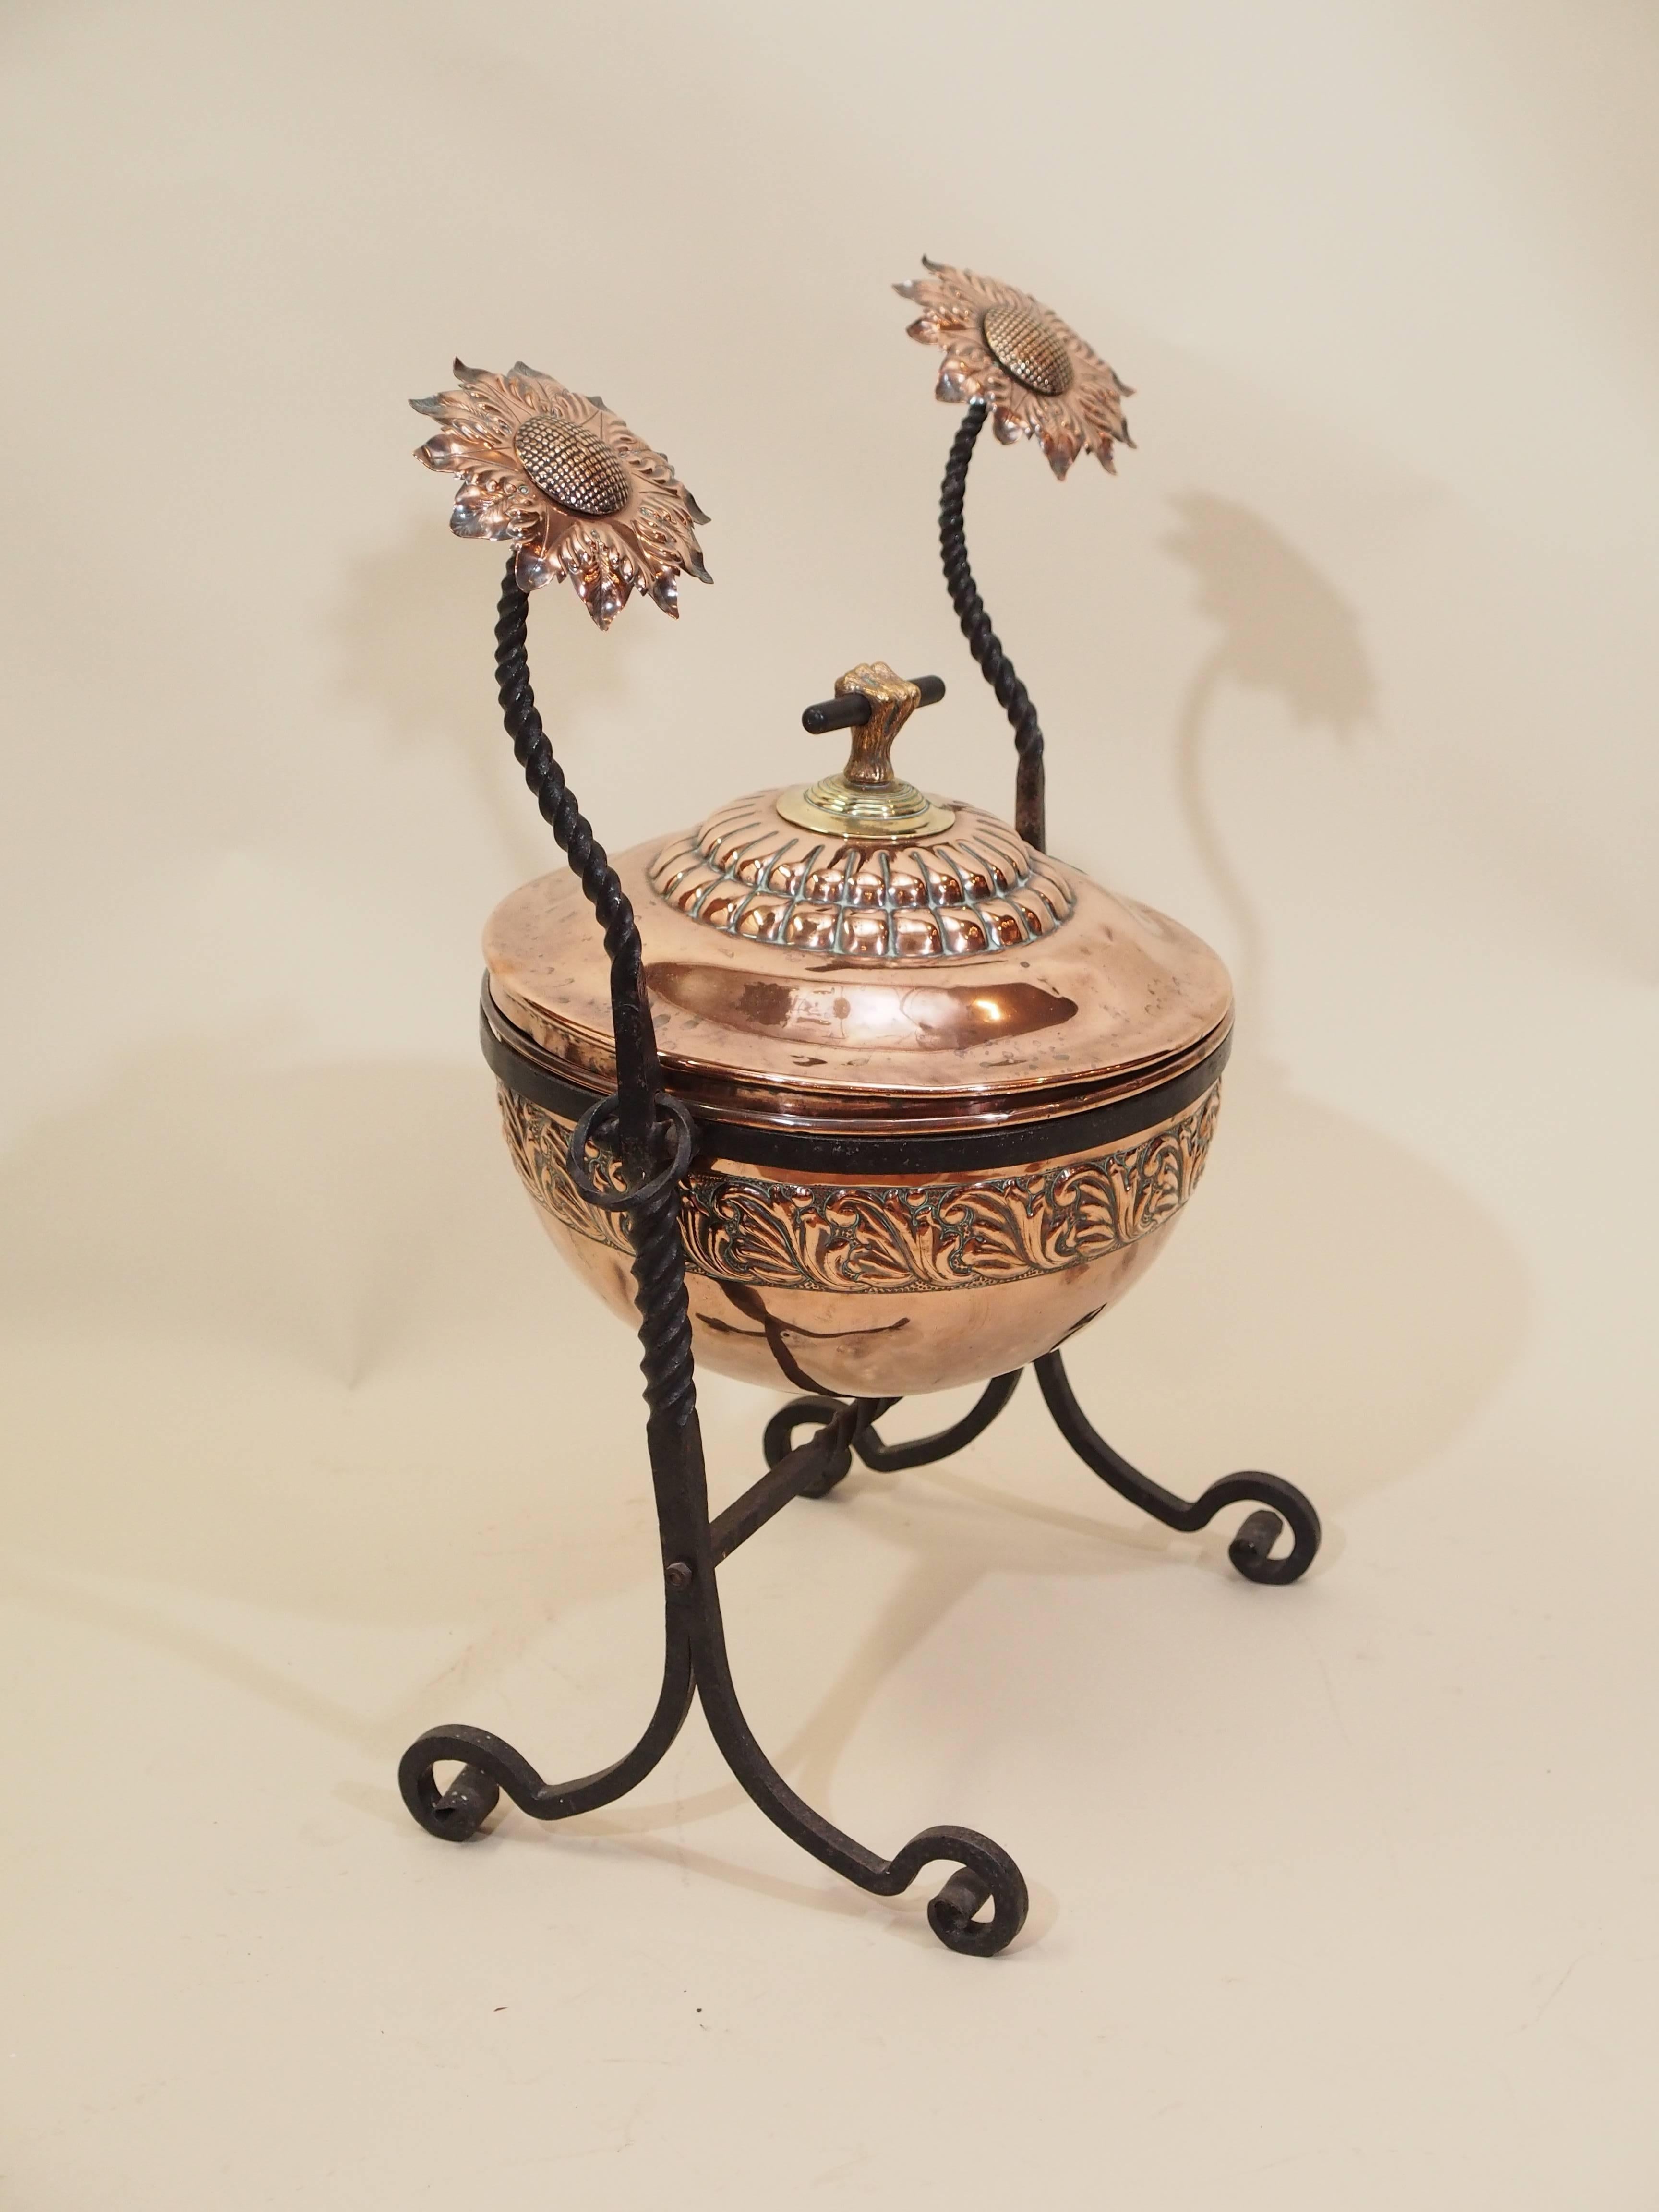 Antique English copper and brass coal bucket, circa 1890.